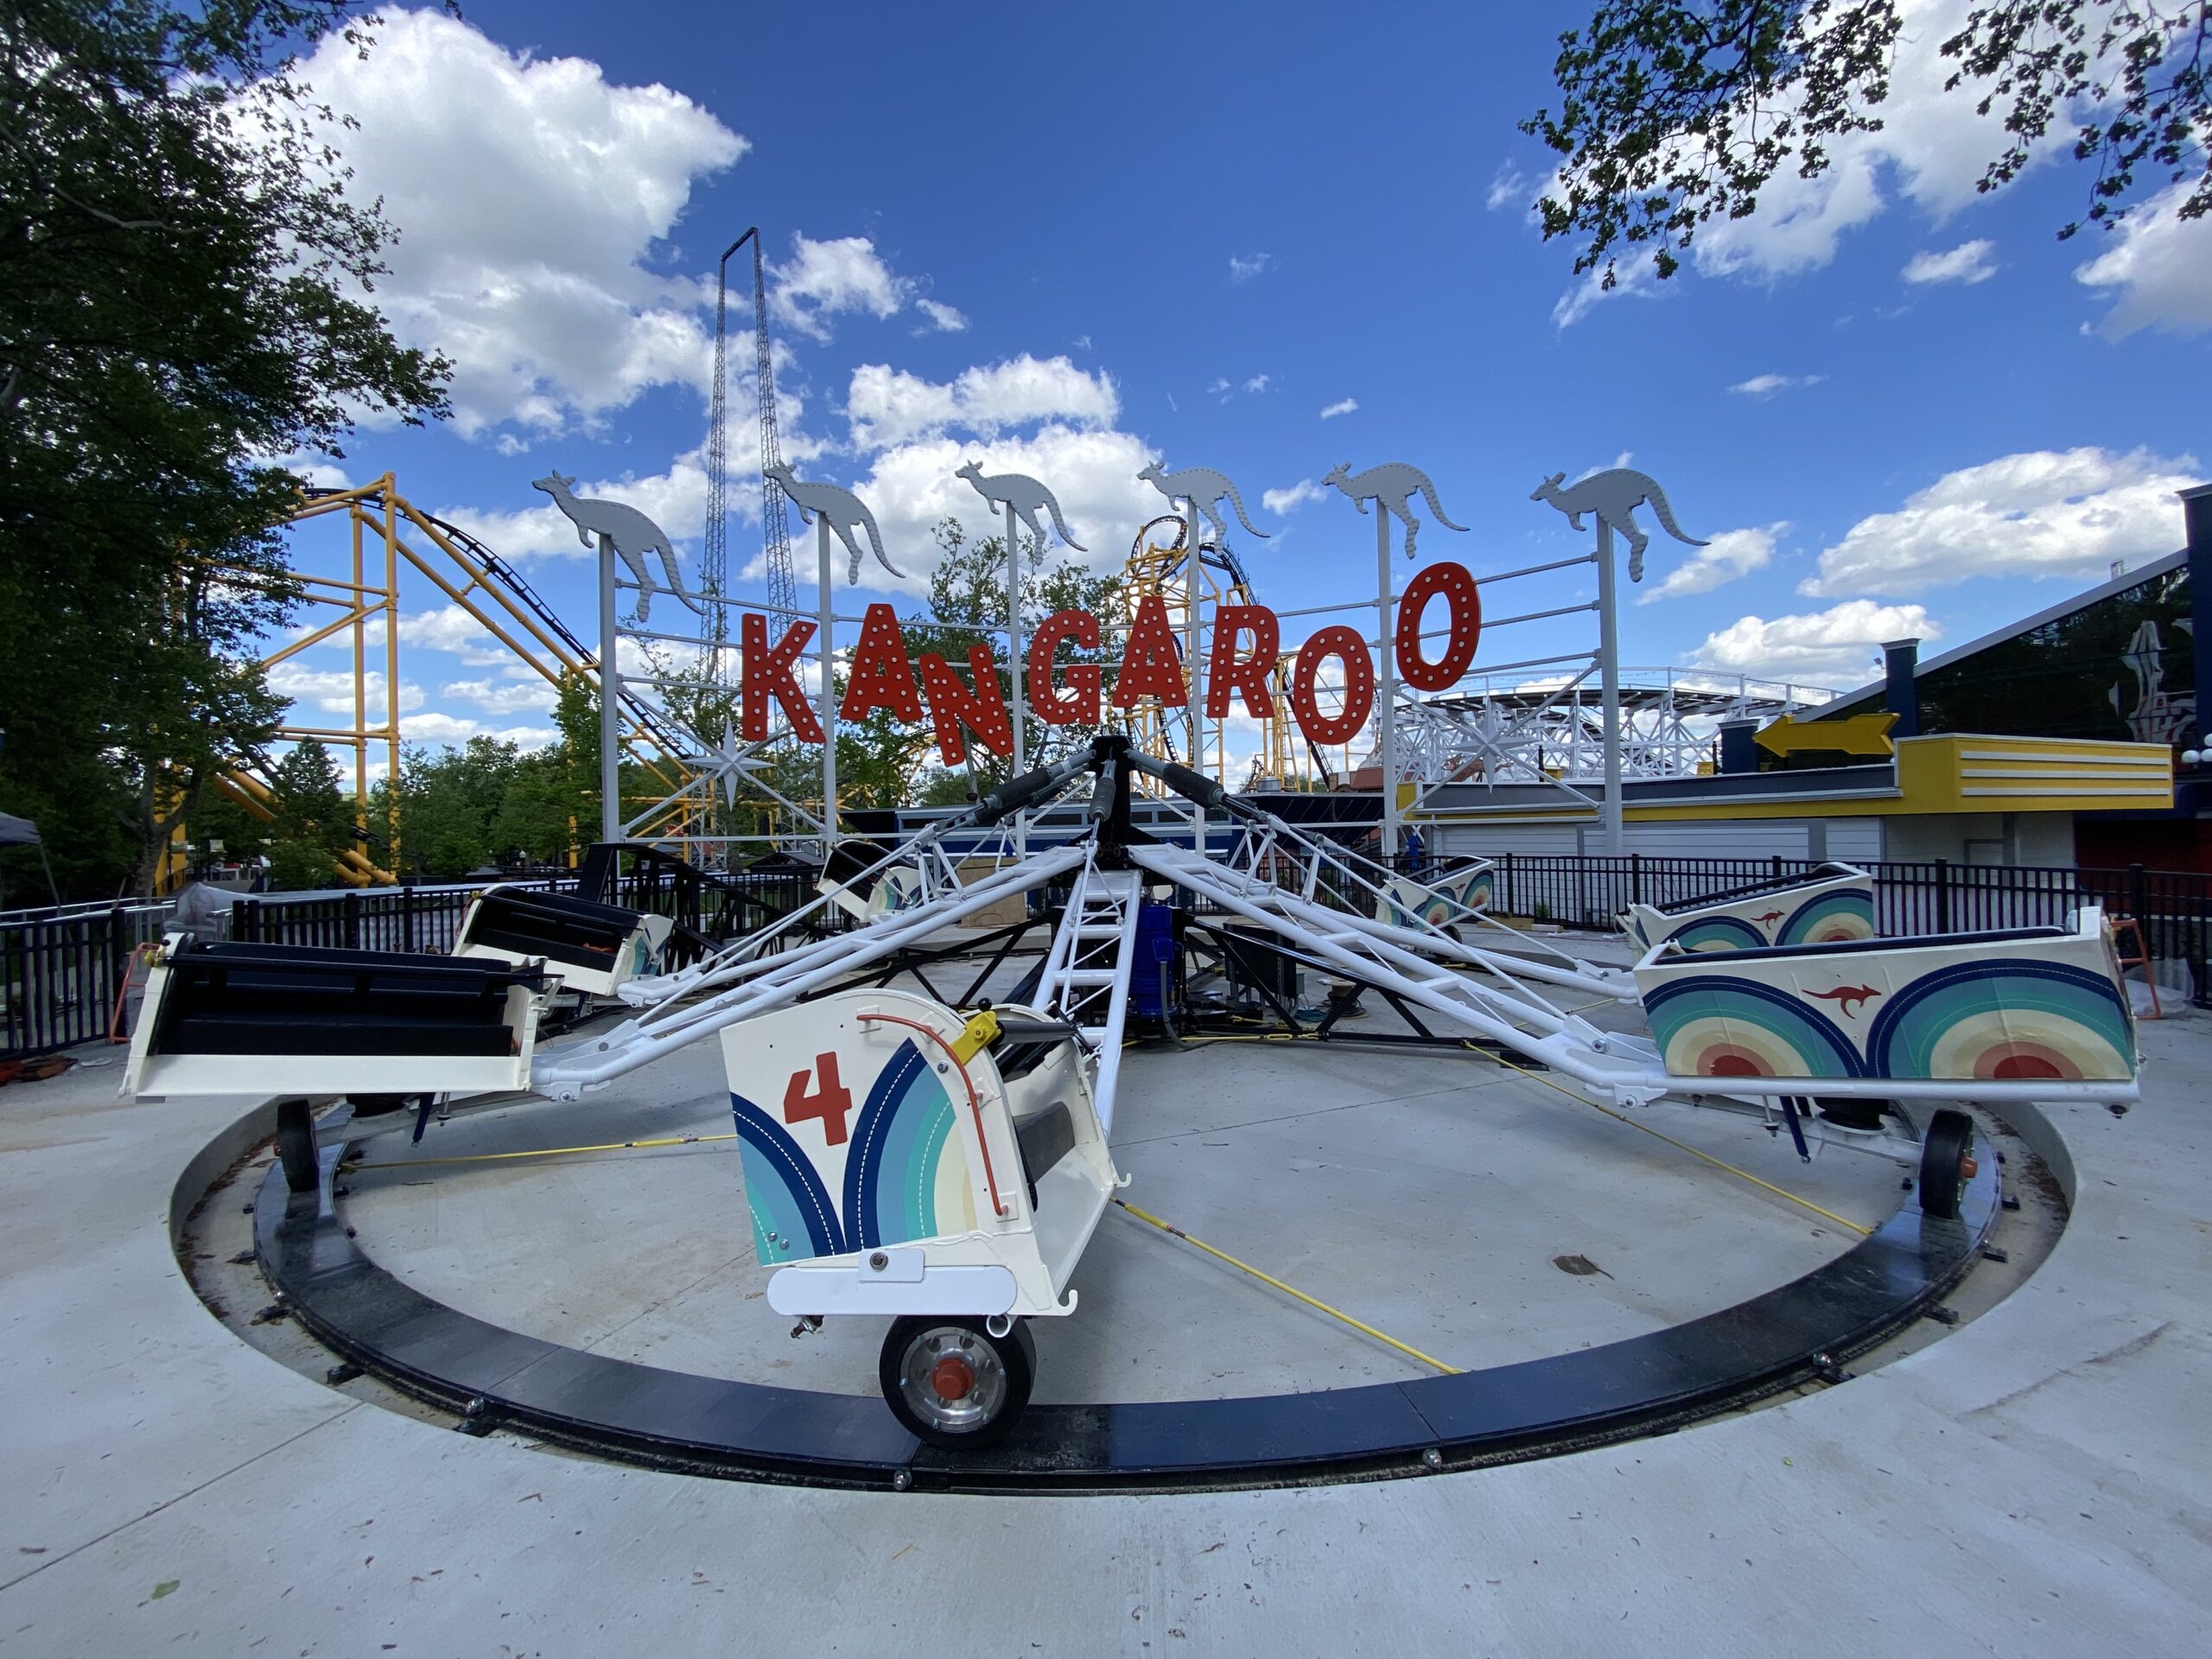 Kennywood Kangaroo opens May 29, bouncing park into summer of